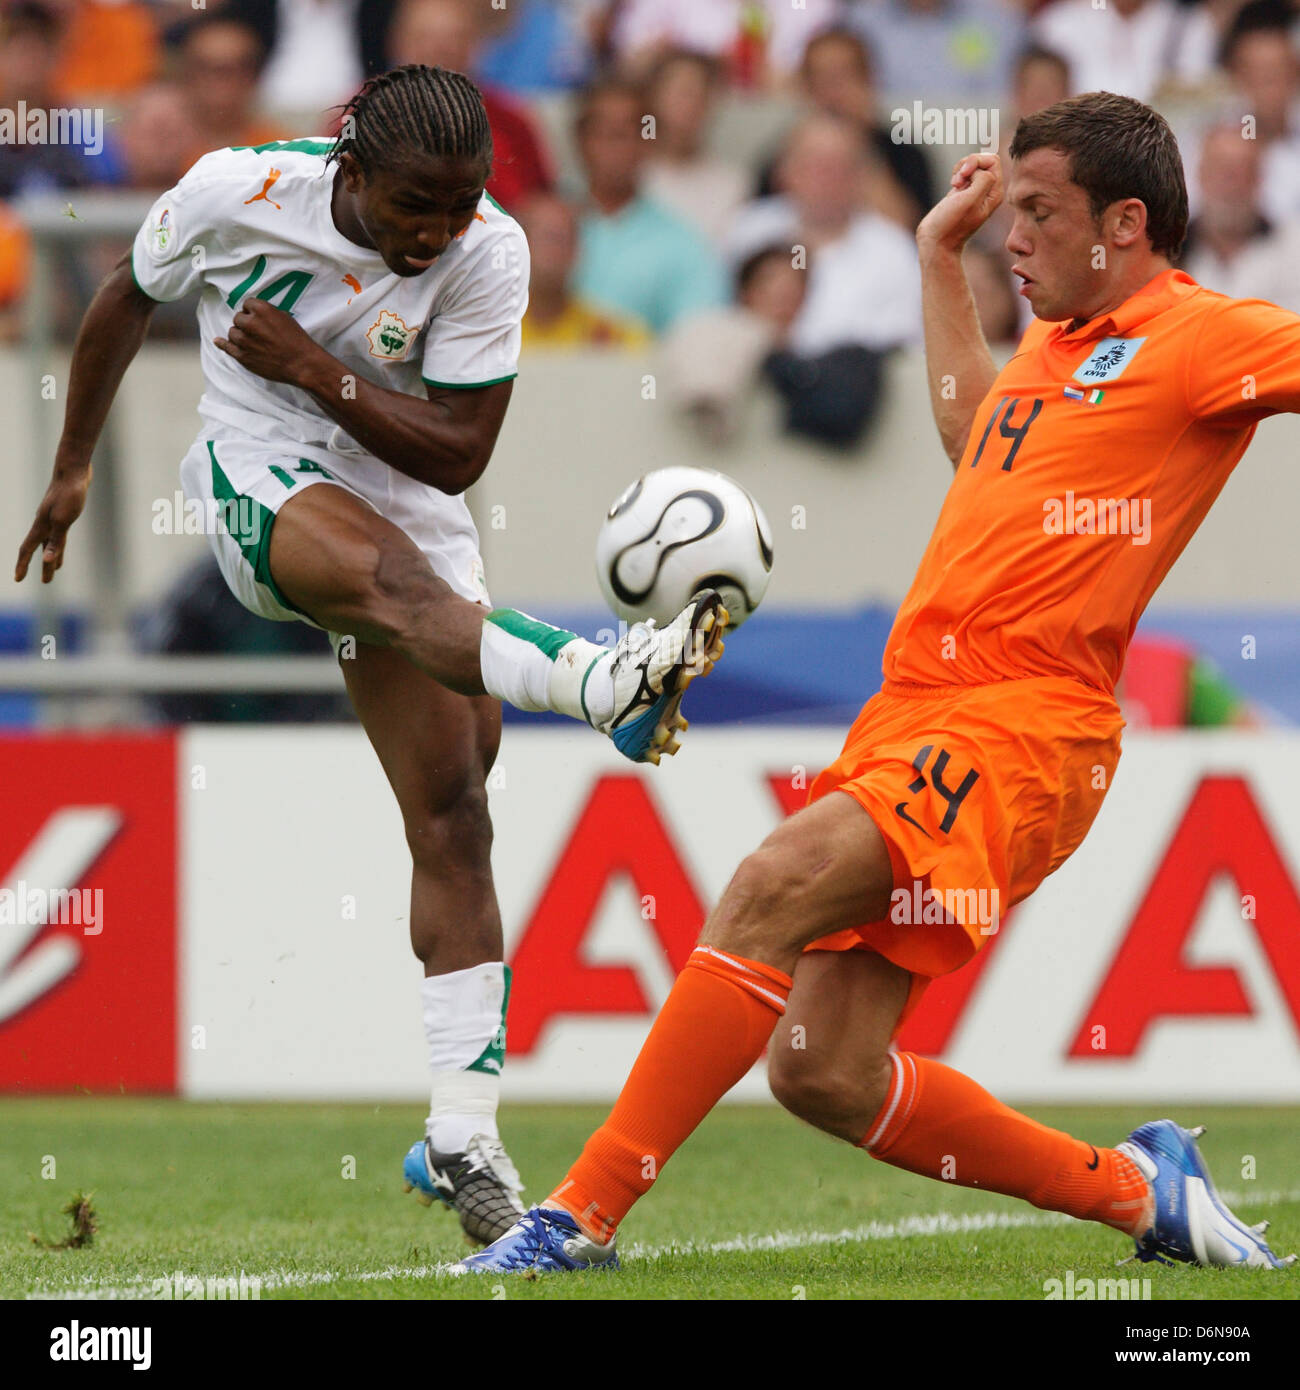 B. Kone von Côte d ' Ivoire (L) kickt den Ball vor John Hettinga von der Netherlands (R) während eines WM-Spiels. Stockfoto